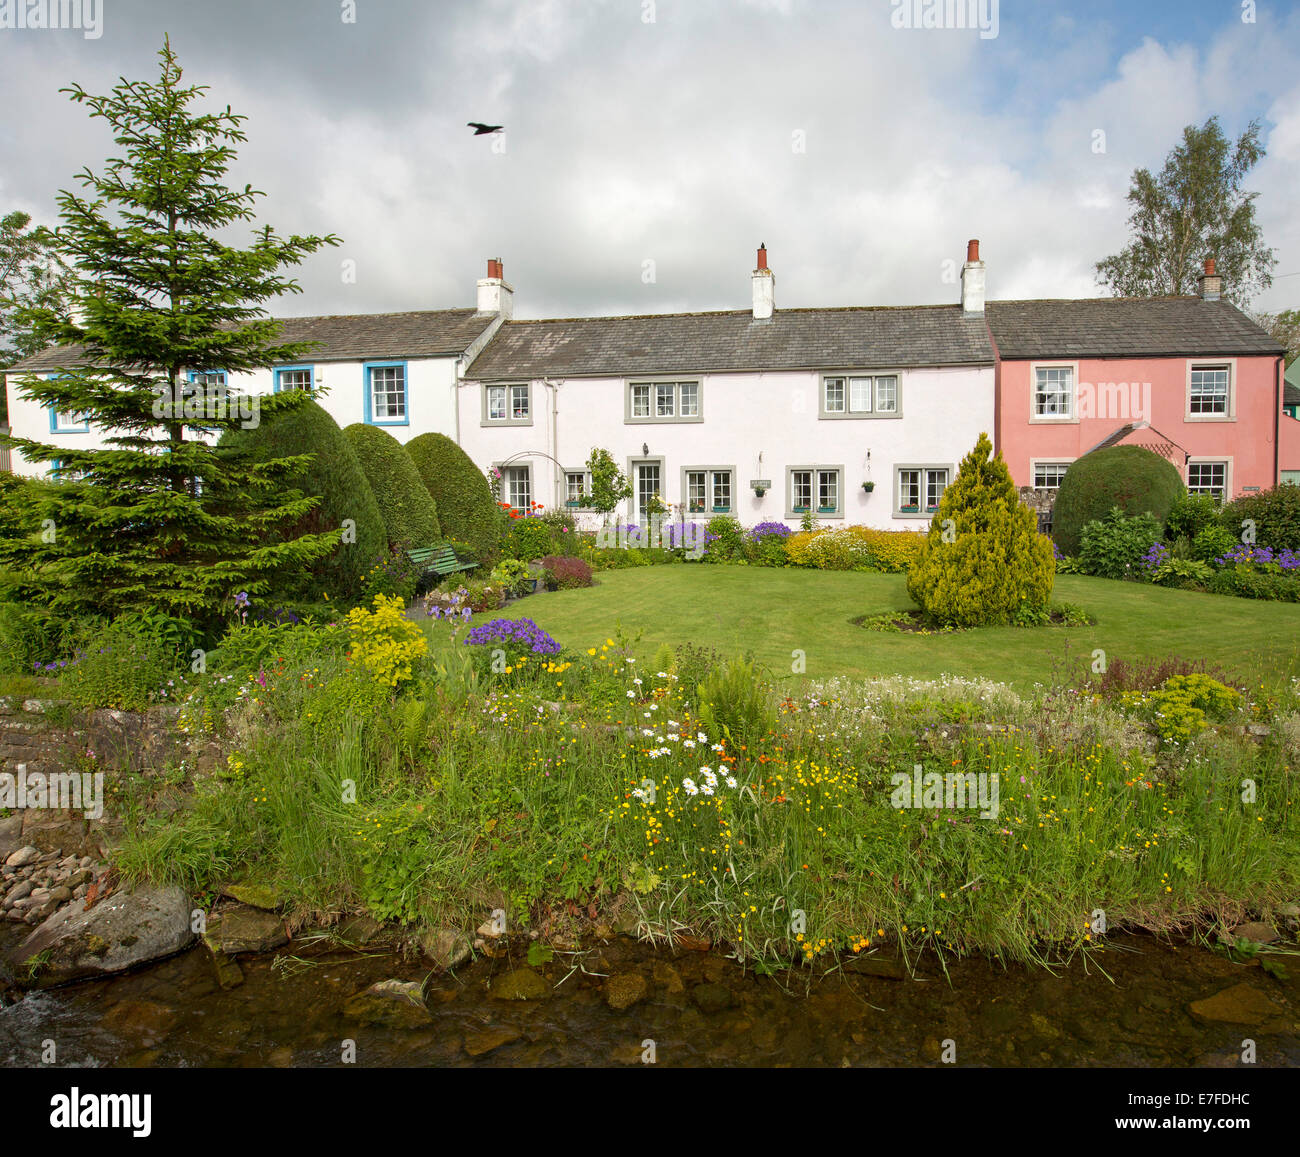 Bianco e rosa Inglese dipinta cottages, giardini con masse di coloratissimi fiori di primavera, arbusti, e il flusso al villaggio di Caldbeck in Cumbria Foto Stock